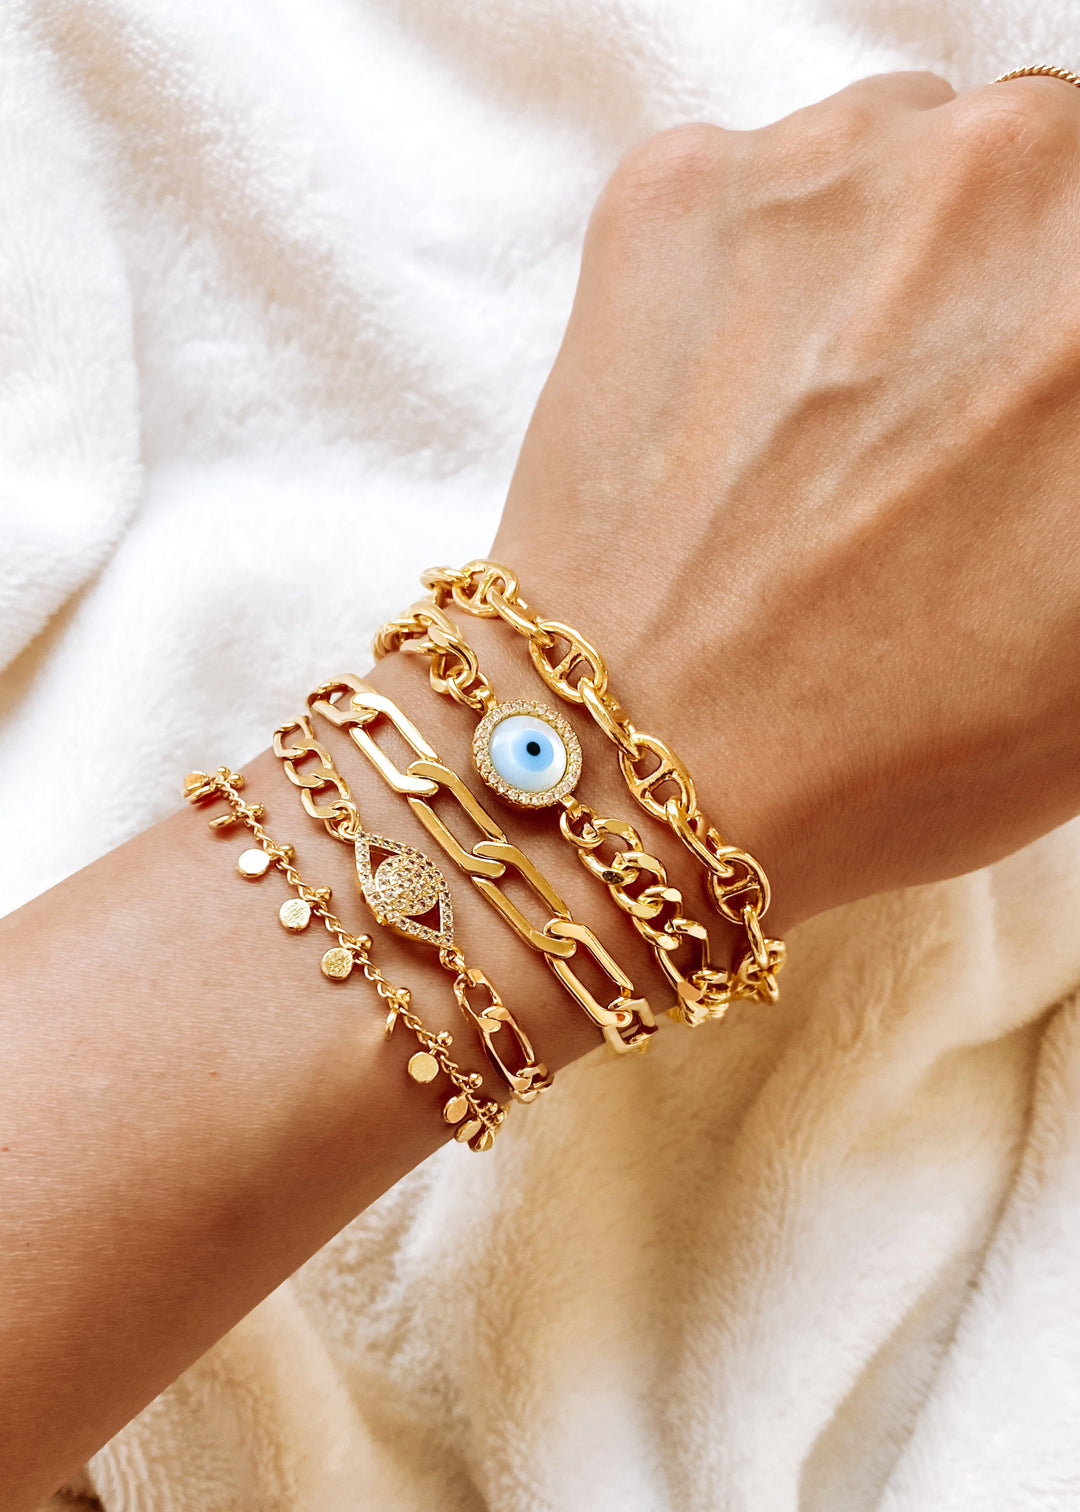 Luna Evil Eye Bracelet - Gold Filled